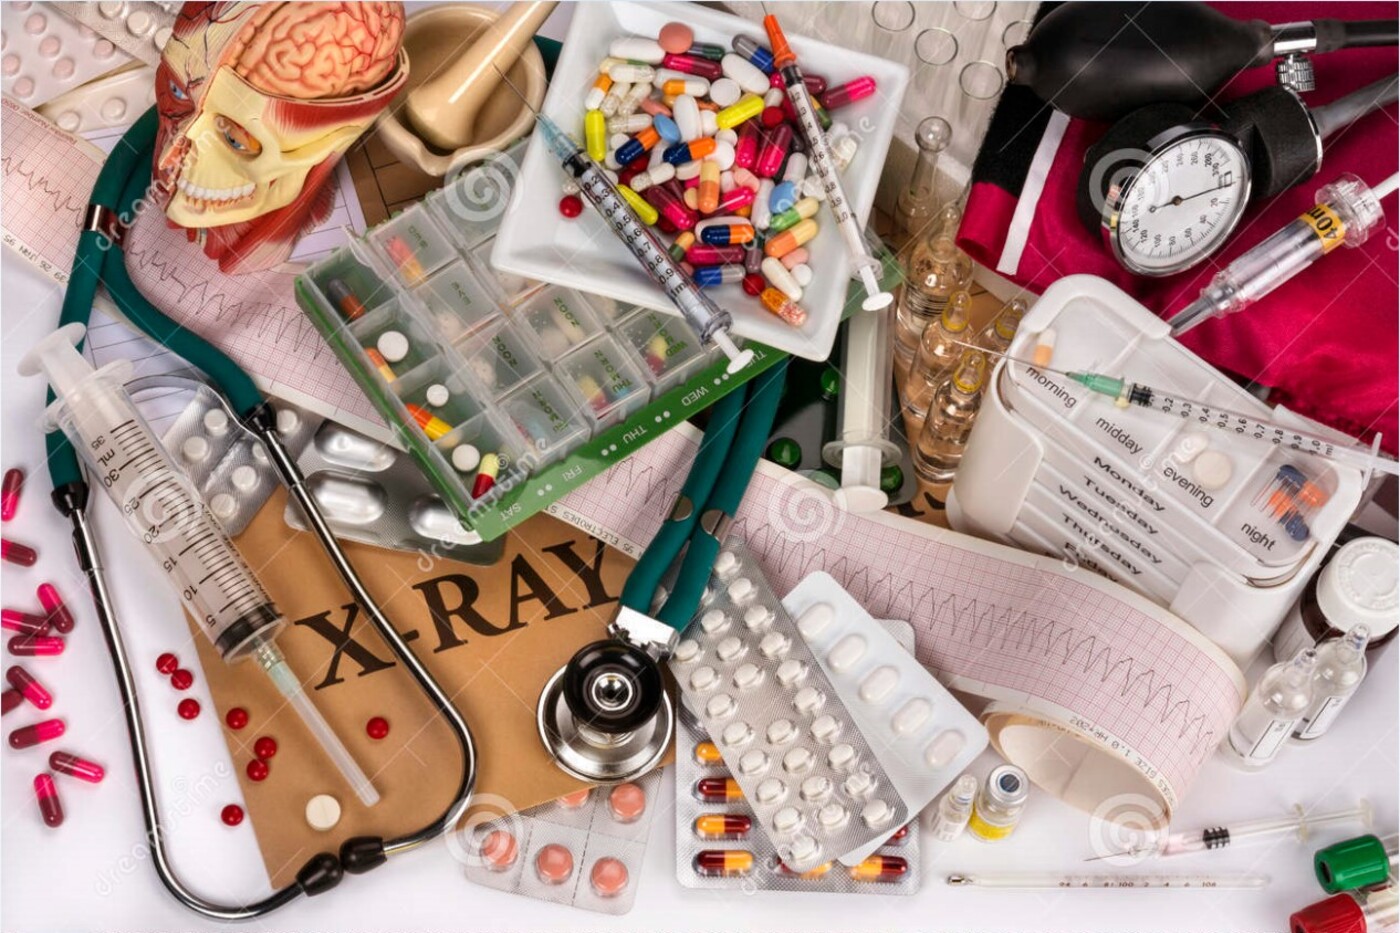 Различные медицинские предметы лежат вместе: таблетки, шприцы, стетоскоп, тонометр и др.